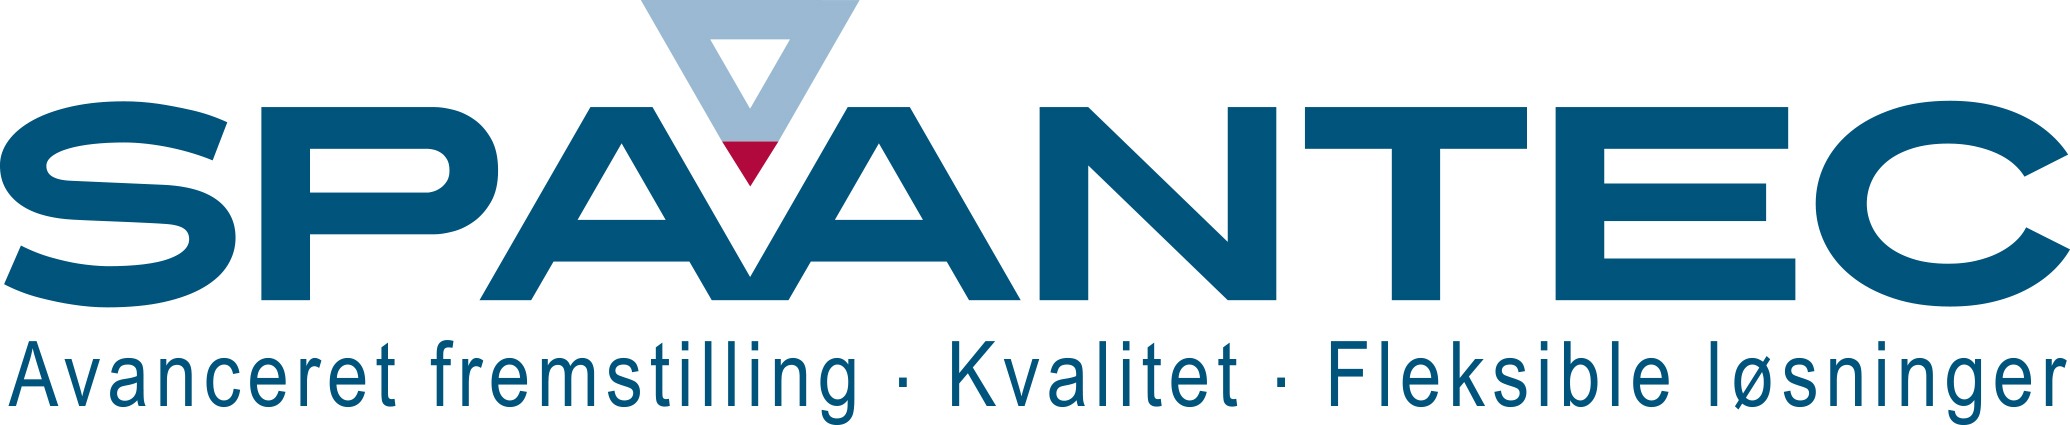 Spaantec Logo